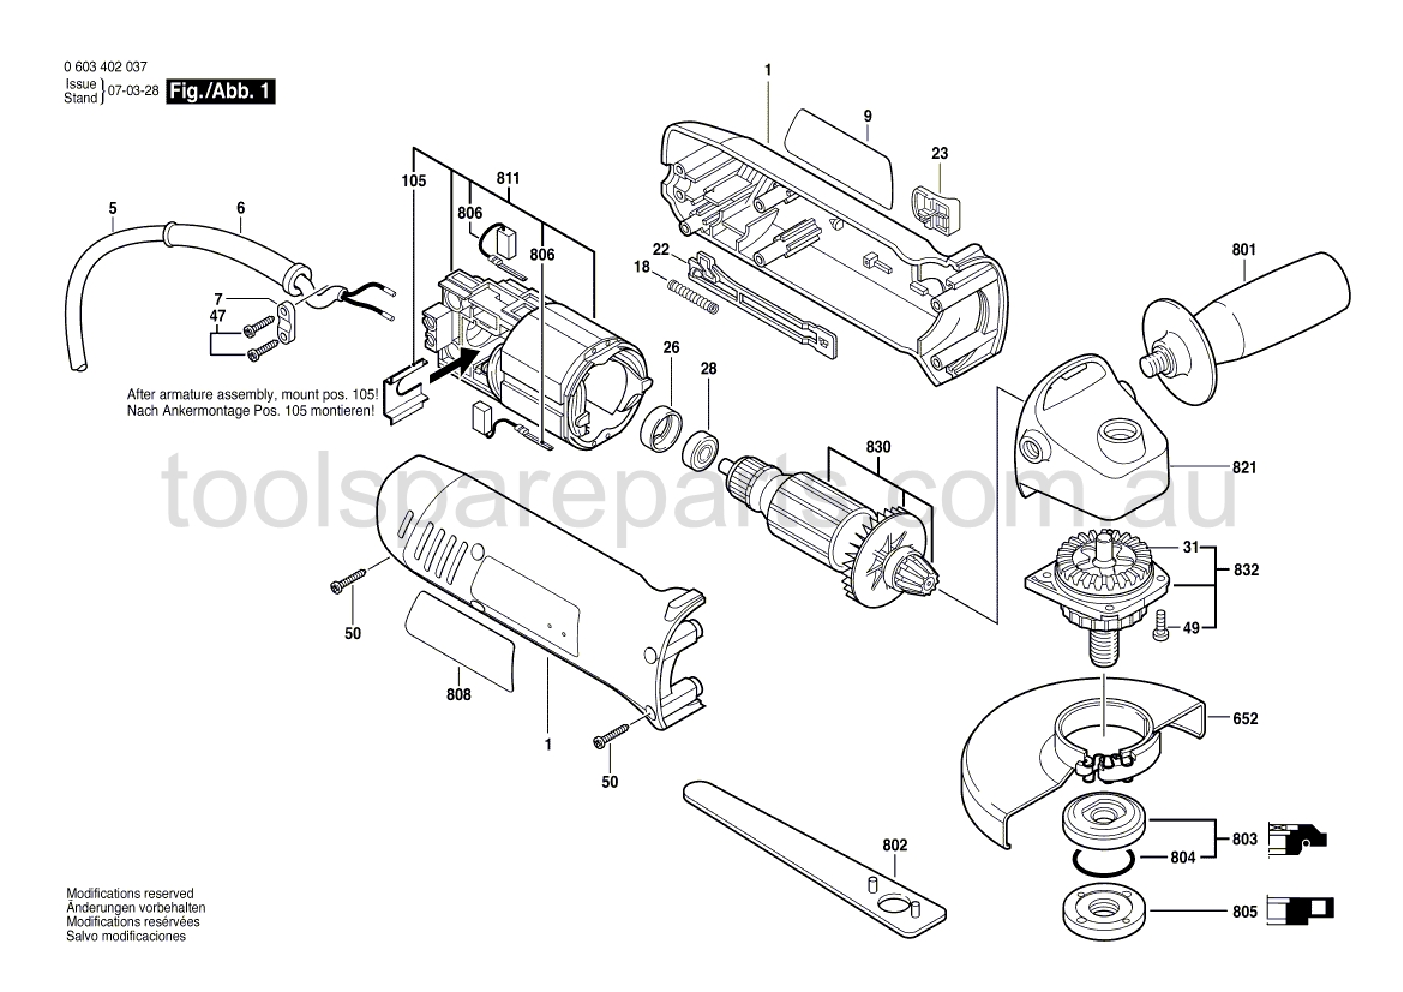 Bosch PWS 7-100 0603402037  Diagram 1